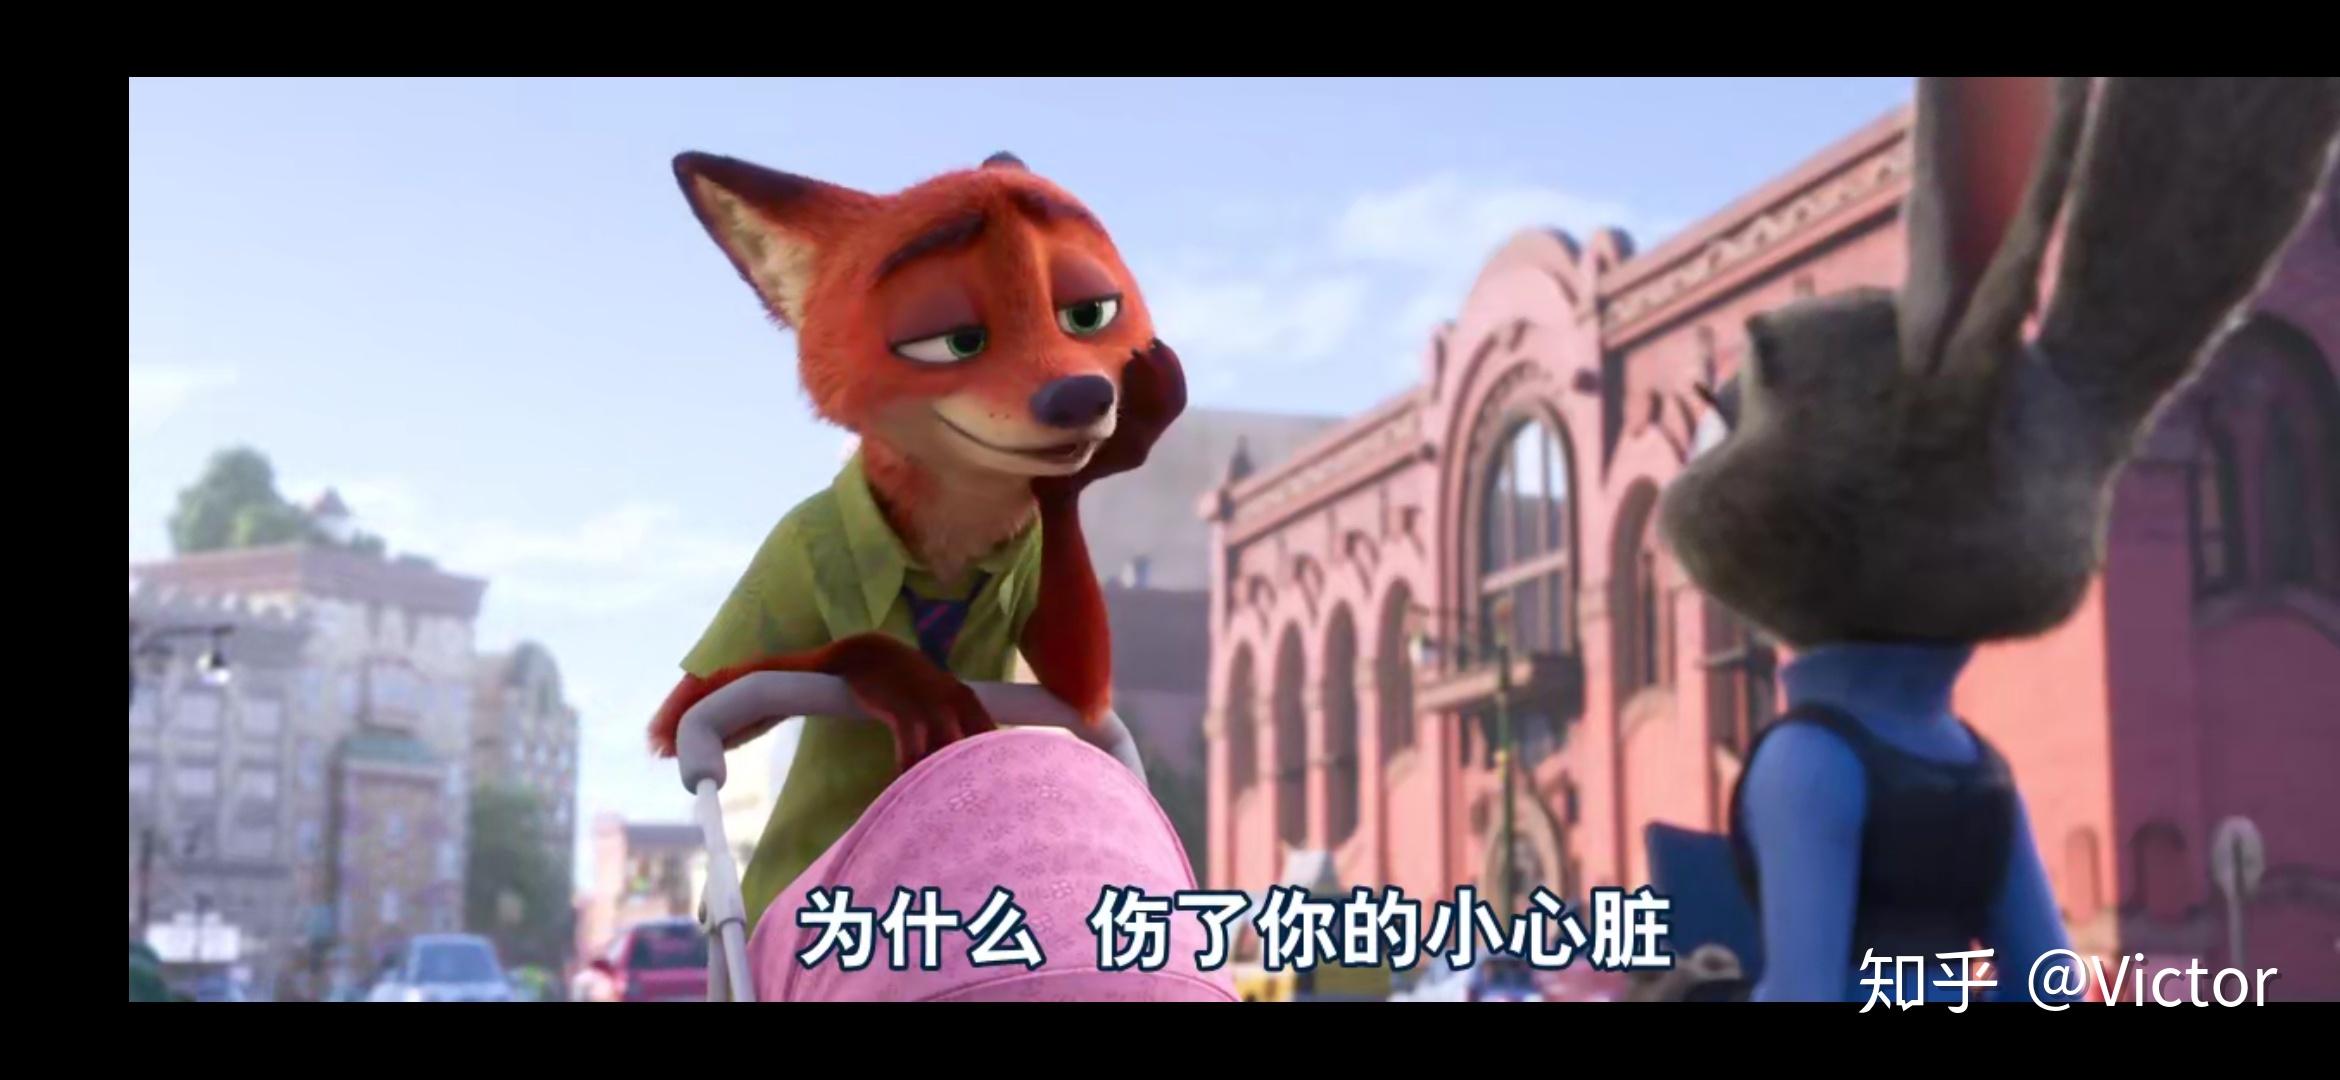 为什么《疯狂动物城》里的狐狸尼克会让人觉得帅? 